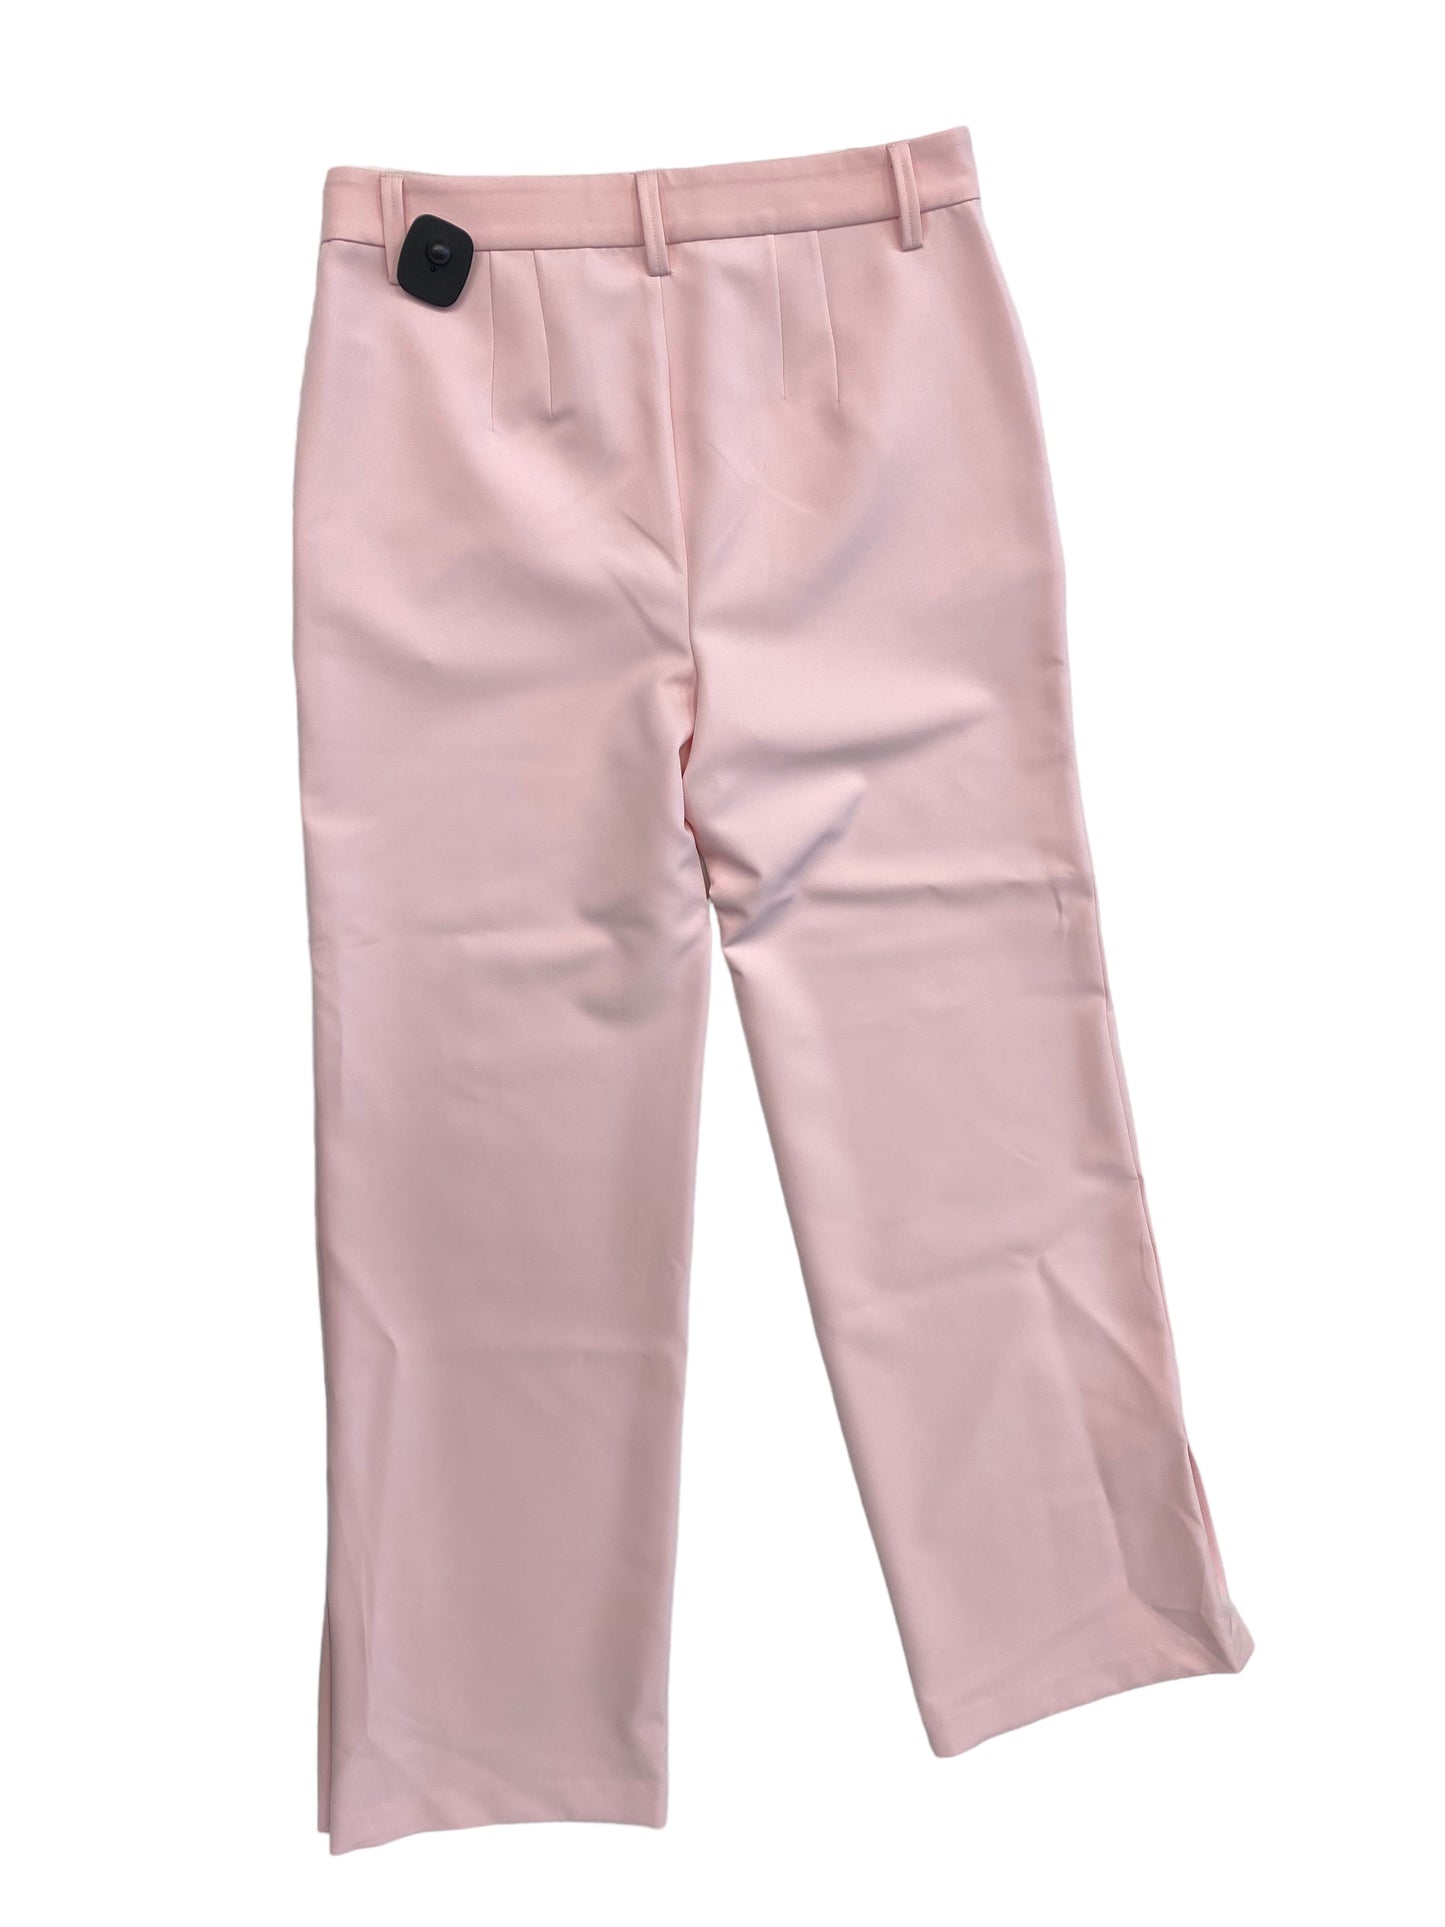 Pink Pants Dress Sanctuary, Size 10